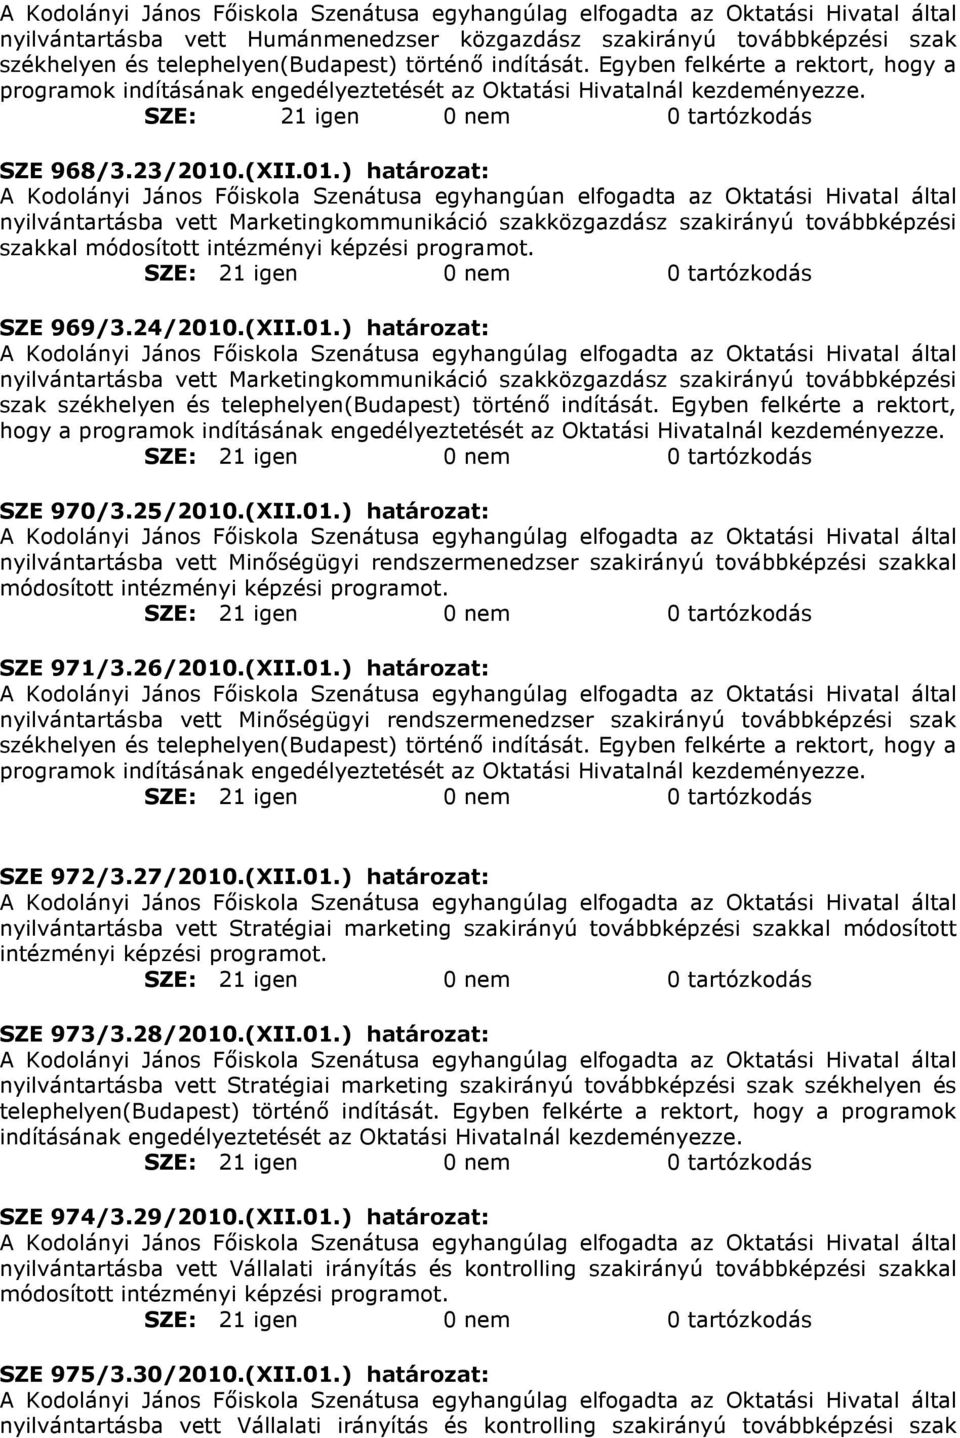 ) határozat: A Kodolányi János Fıiskola Szenátusa egyhangúan elfogadta az Oktatási Hivatal által nyilvántartásba vett Marketingkommunikáció szakközgazdász szakirányú továbbképzési szakkal SZE 969/3.